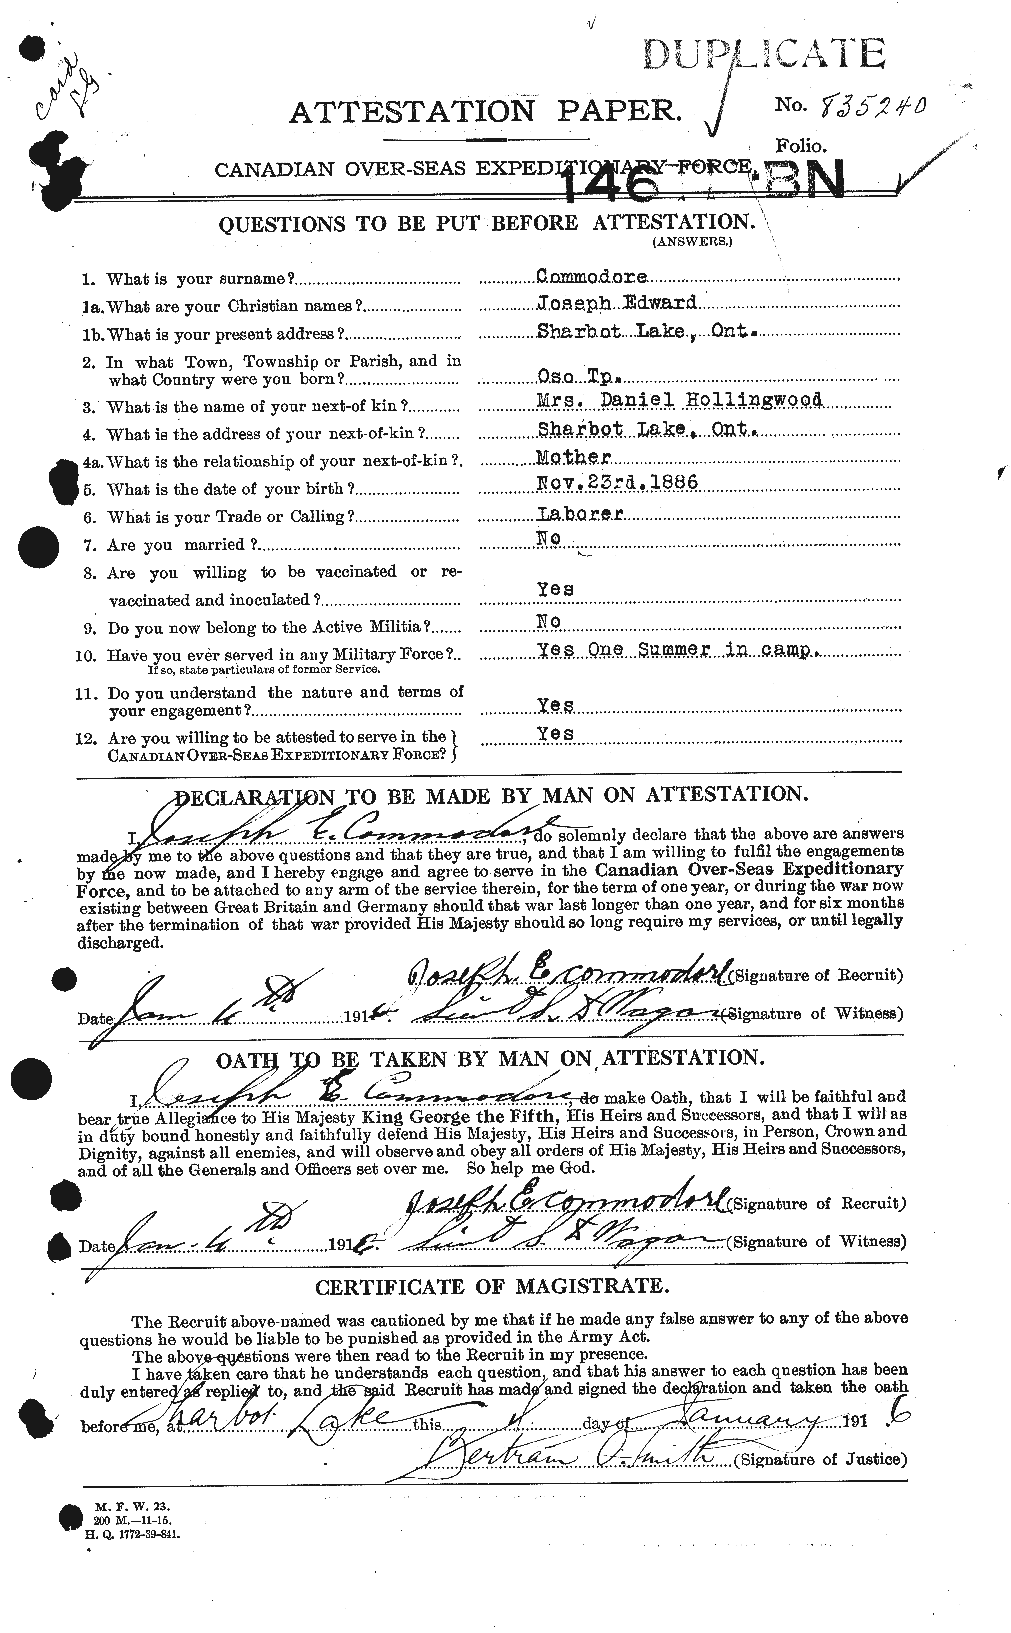 Dossiers du Personnel de la Première Guerre mondiale - CEC 068730a